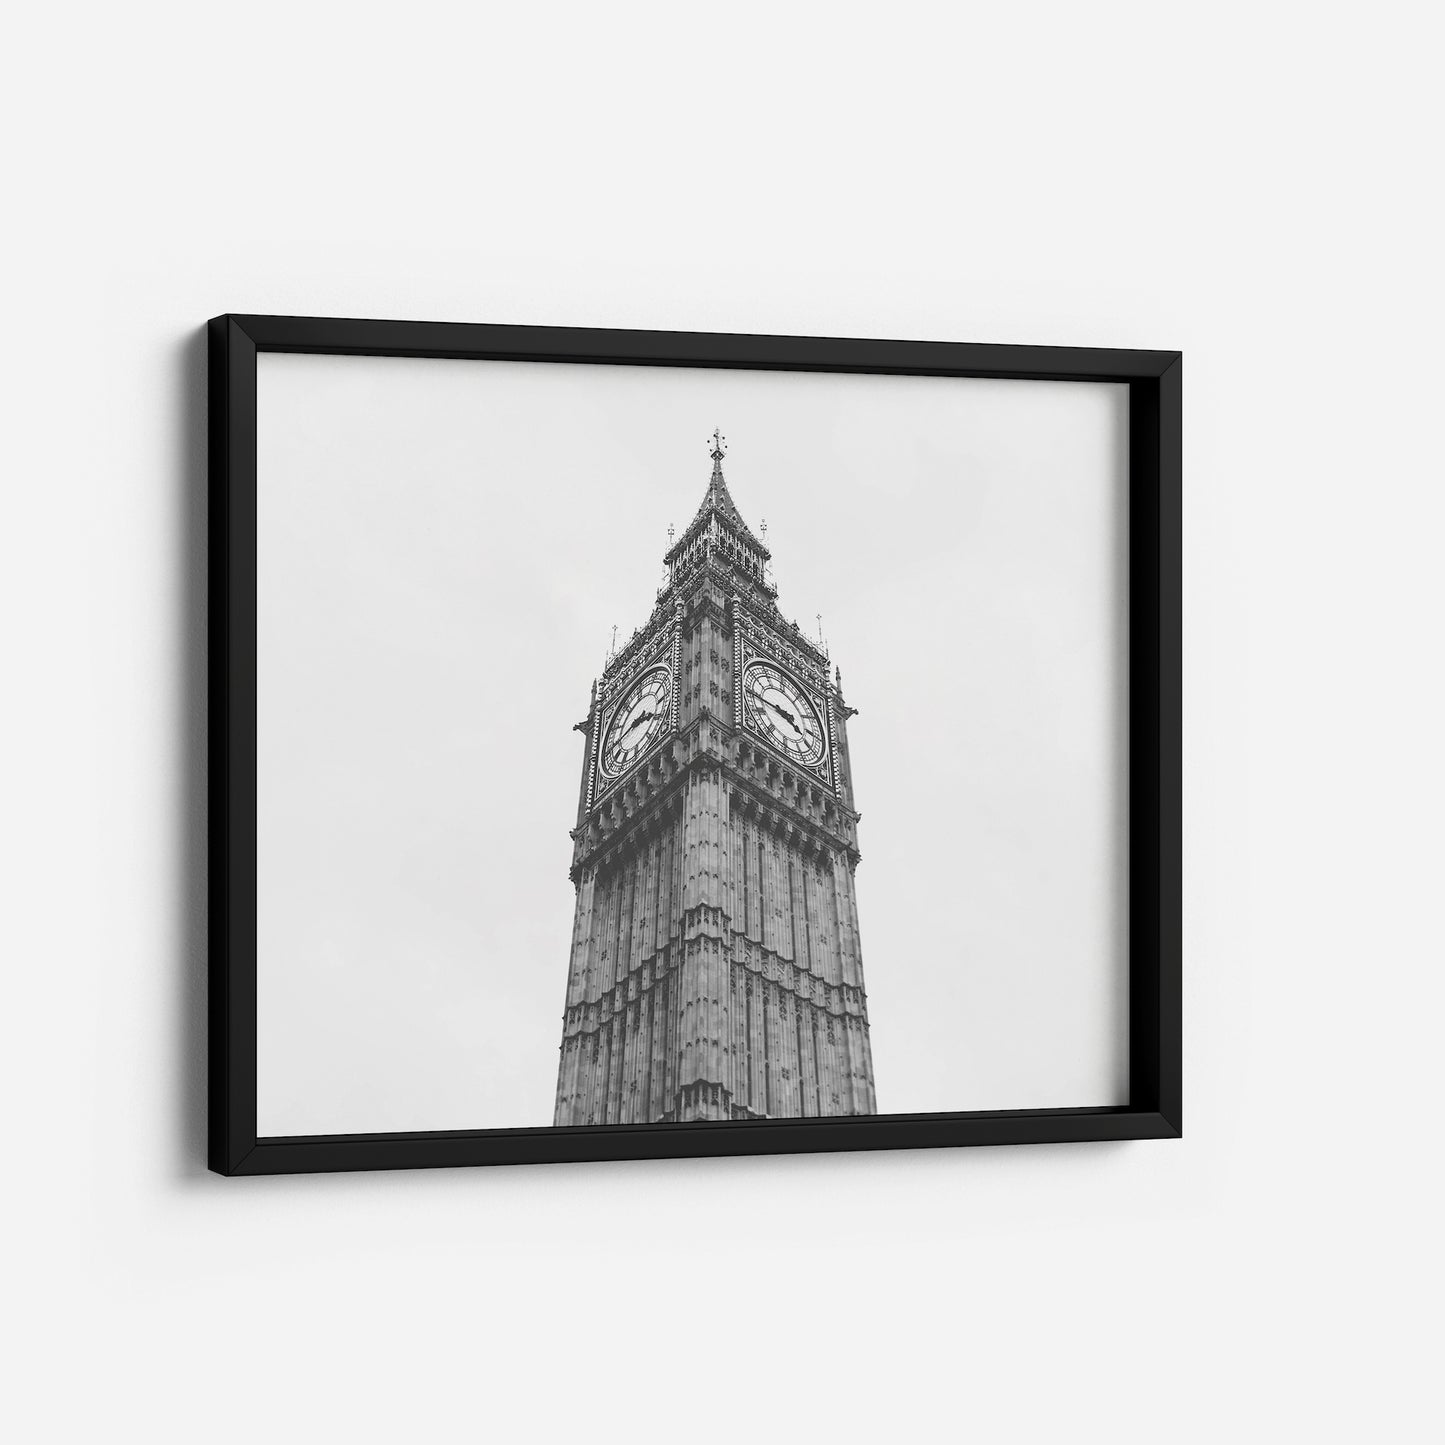 London in Monochrome